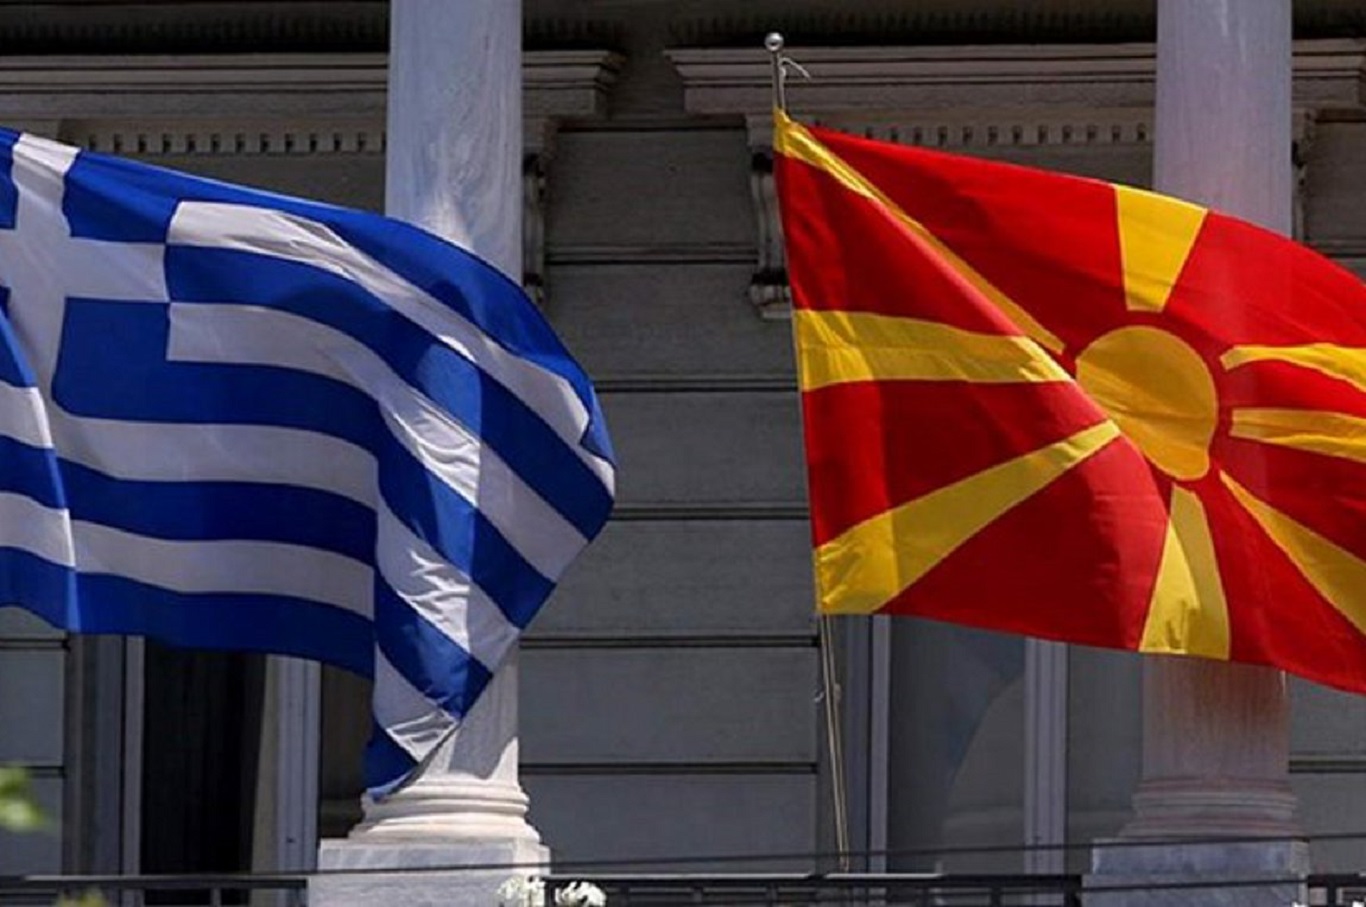 Αντιδρά η ελληνική πρεσβεία στο δημοσίευμα του BBC: «Ιστορικές ανακρίβειες και διαστρεβλώσεις σε βάρος της Ελλάδας»